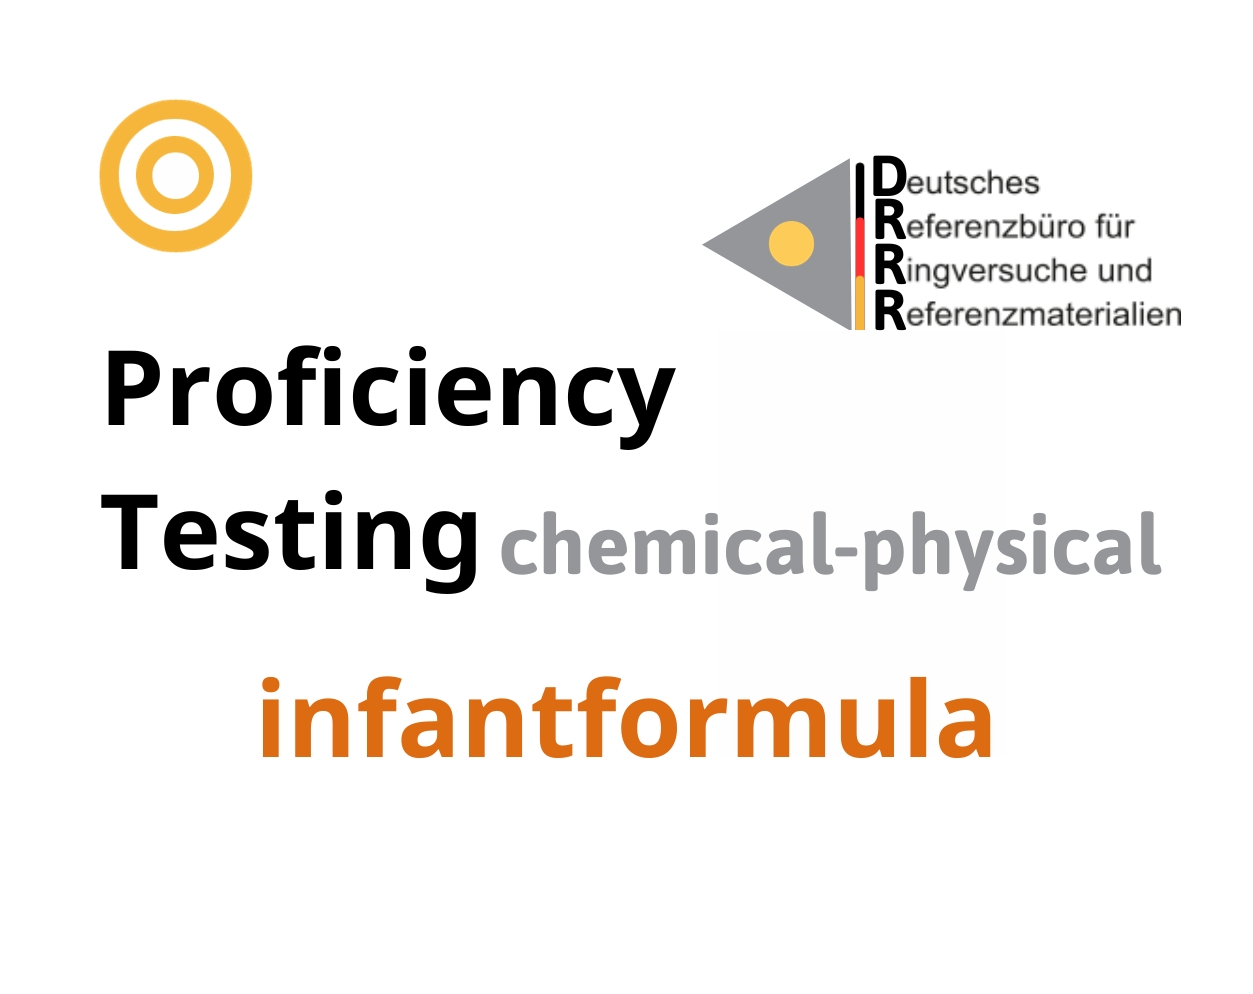 Thử nghiệm thành thạo (ISO 17043) các thông số hoá lý nền mẫu sữa bột cho trẻ sơ sinh (infant formula) Hãng DRRR, Đức